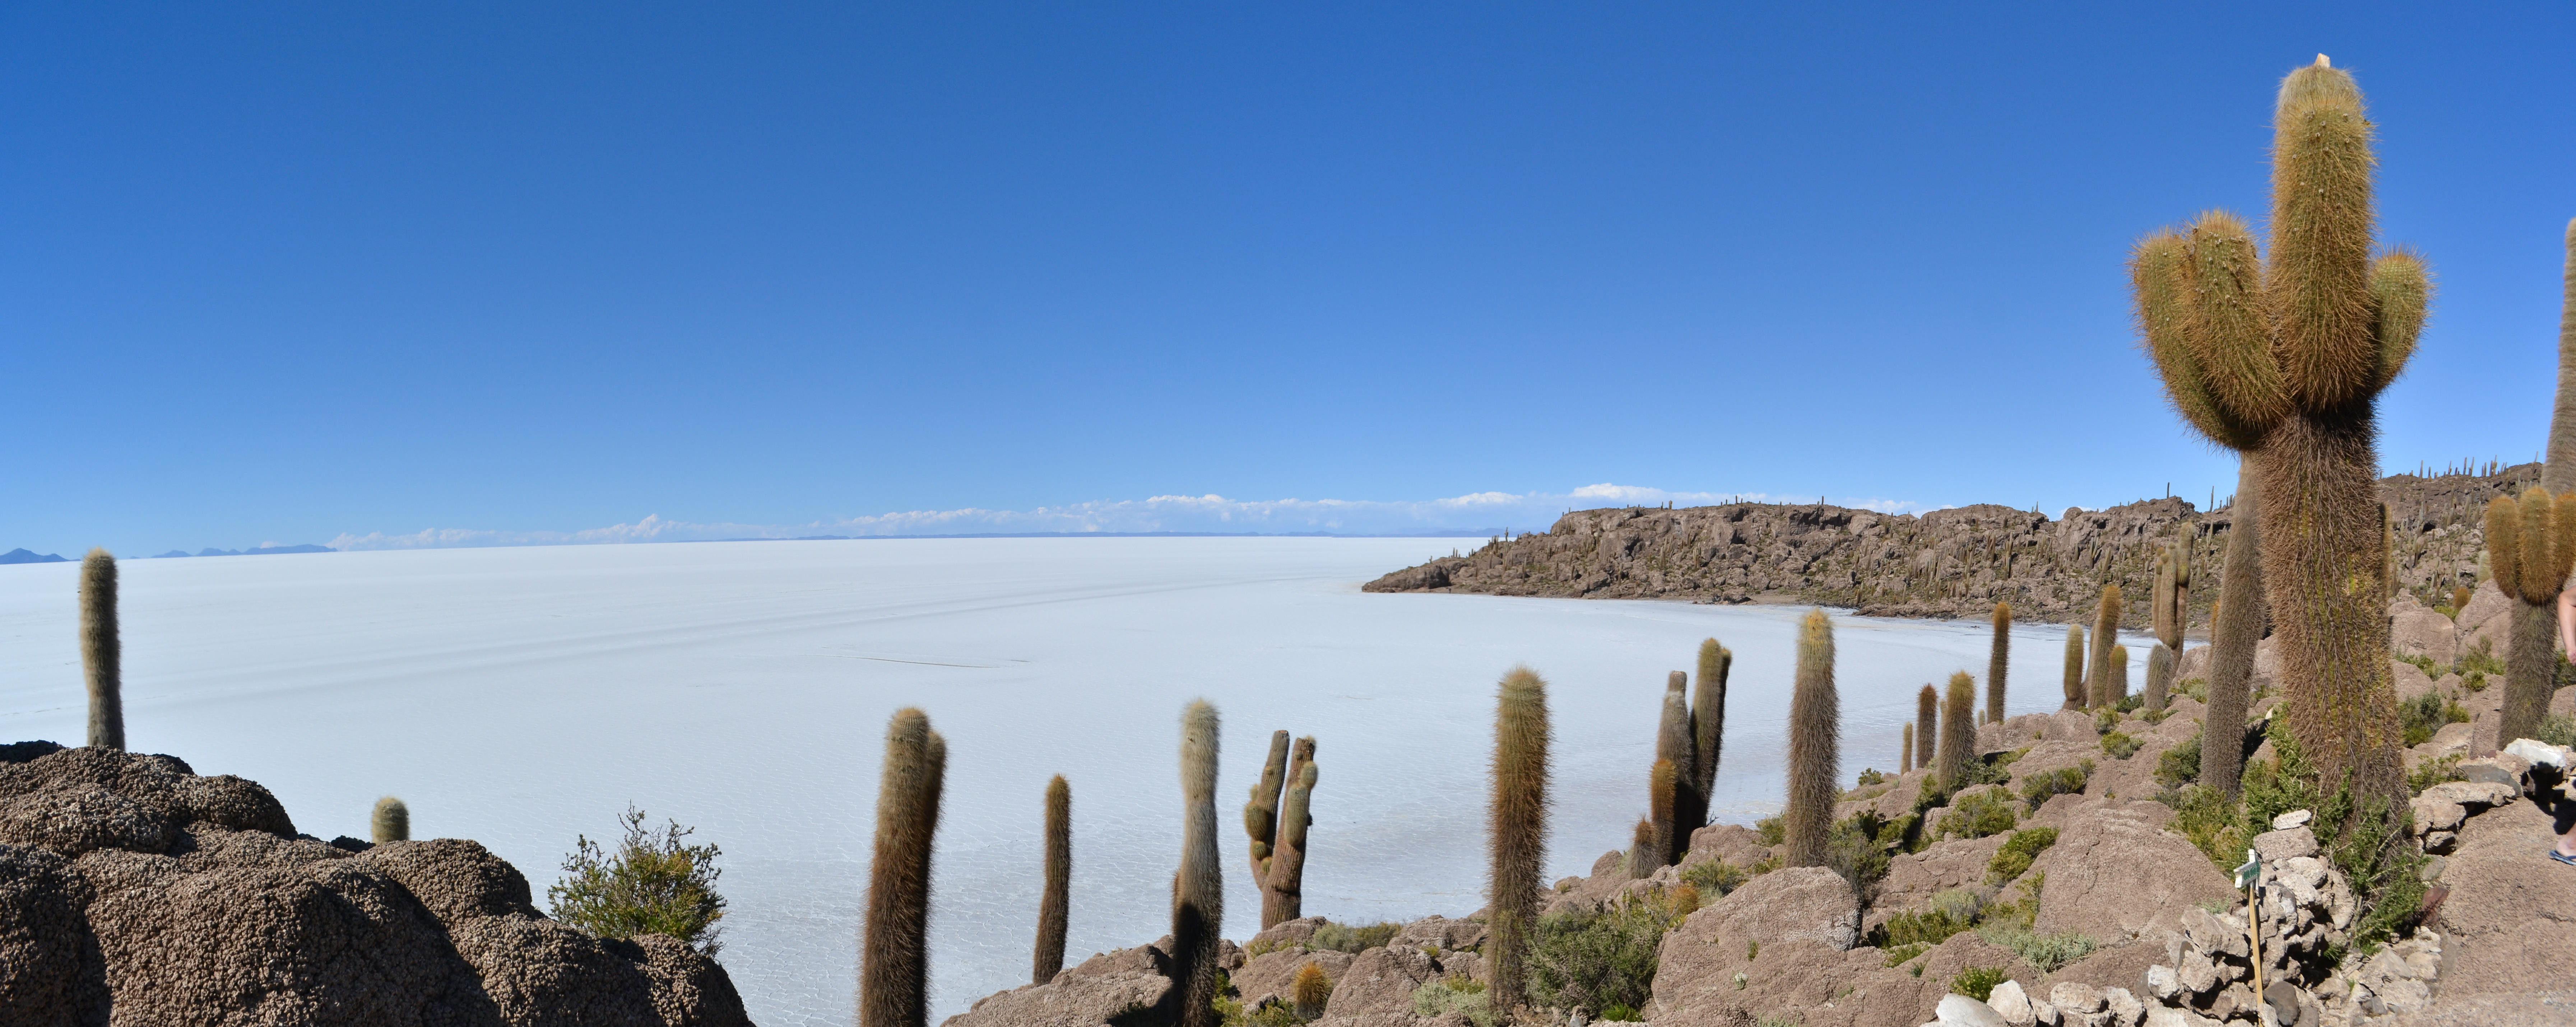 Salar de Uyuni and Isla Incahuasi